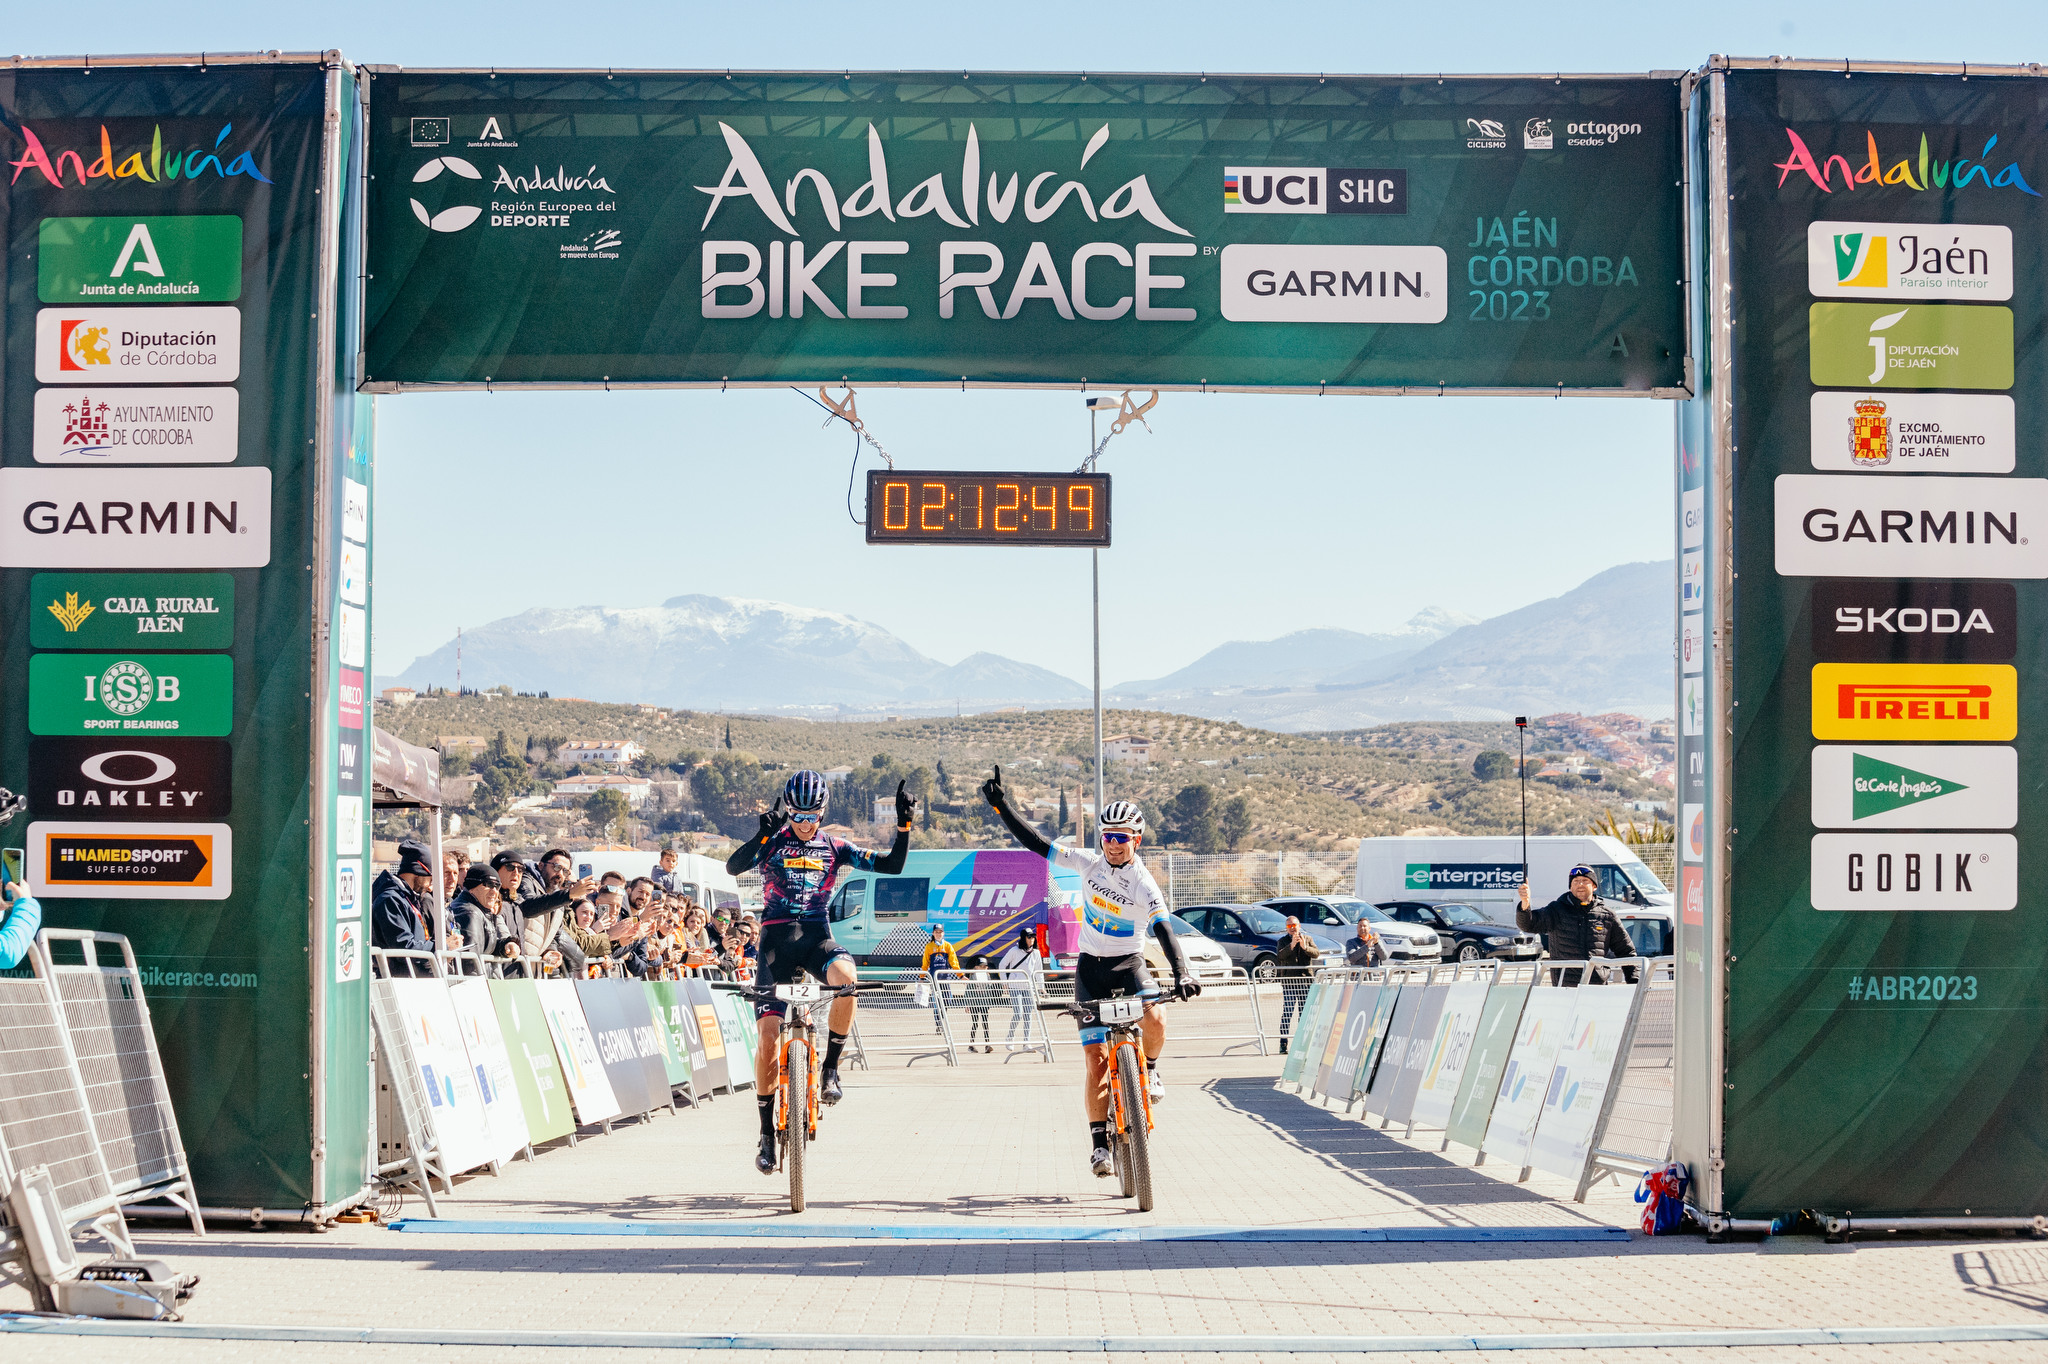 Wout Alleman laat moeilijke periode achter zich met ritwinst in Andalucia Bike Race